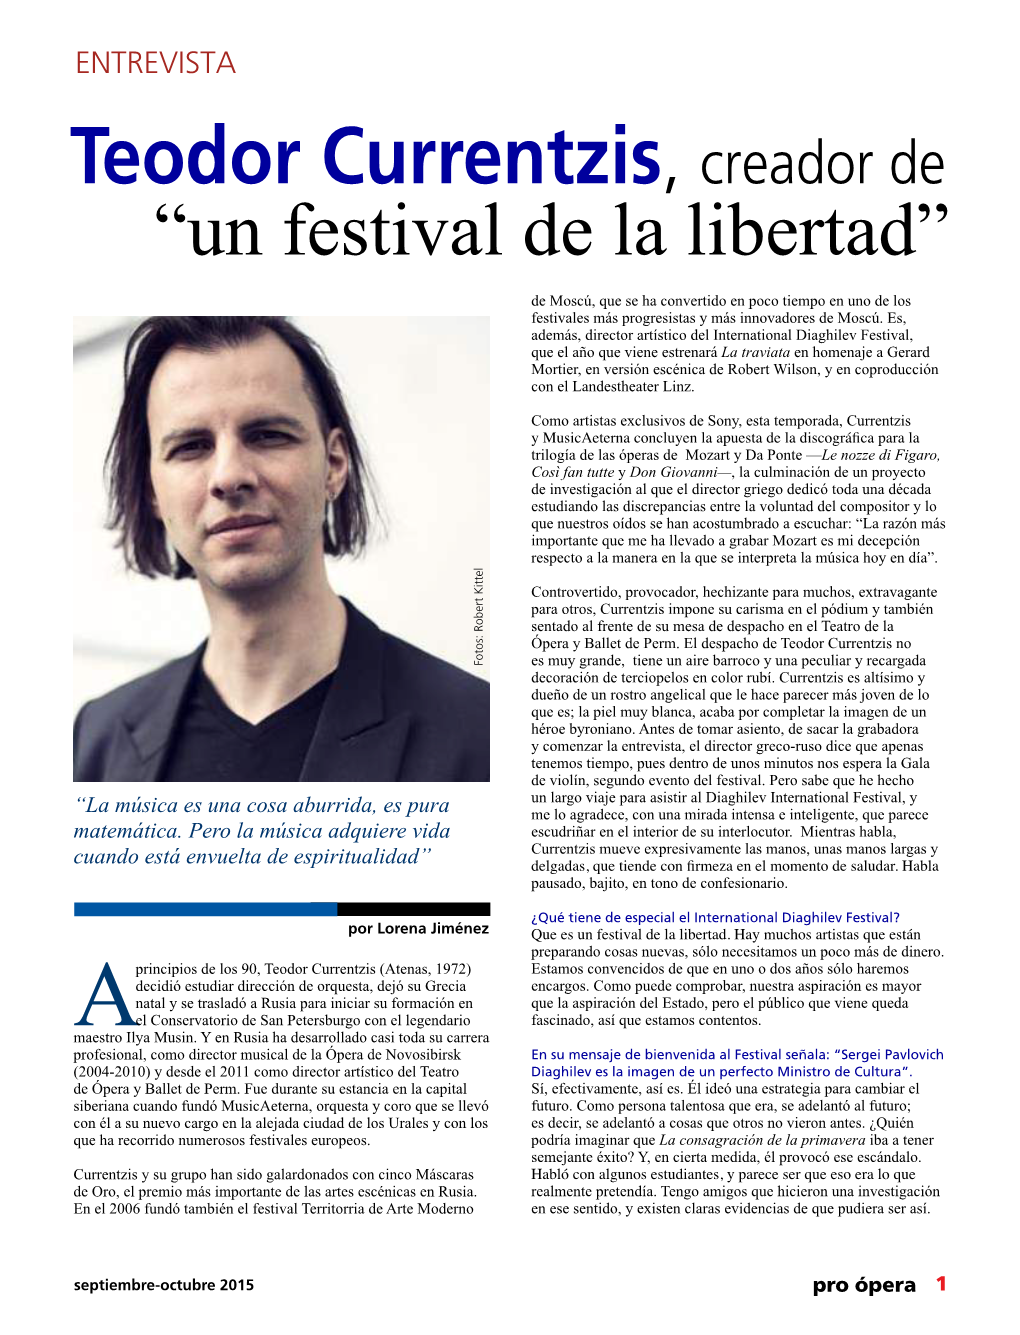 Teodor Currentzis, Creador De “Un Festival De La Libertad”